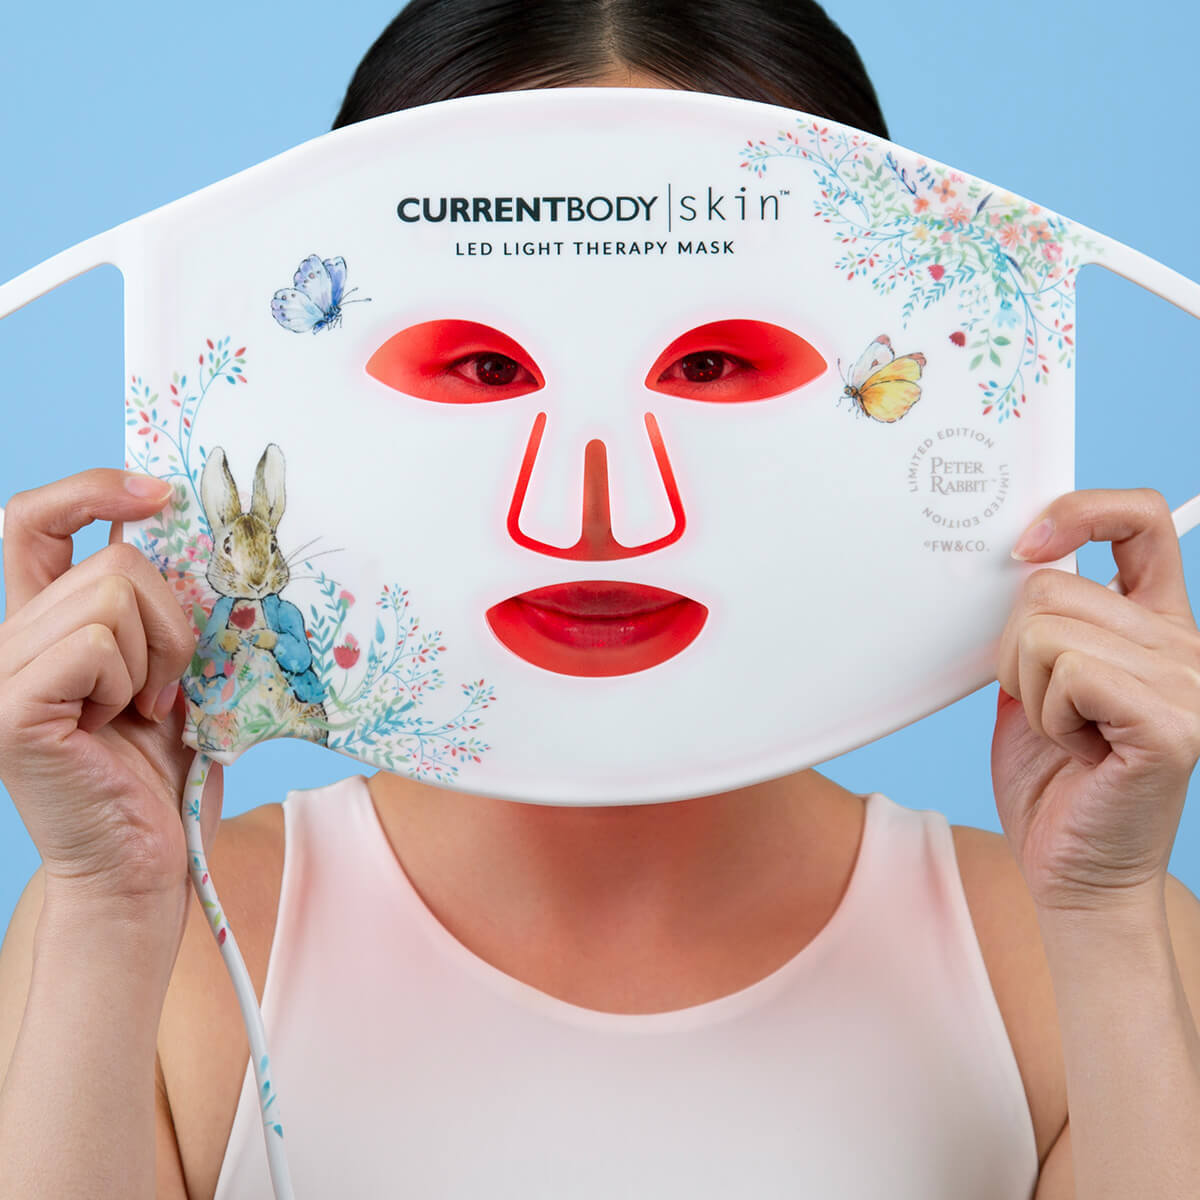 【シートマスク付】CurrentBody skin LEDライトセラピーマスク